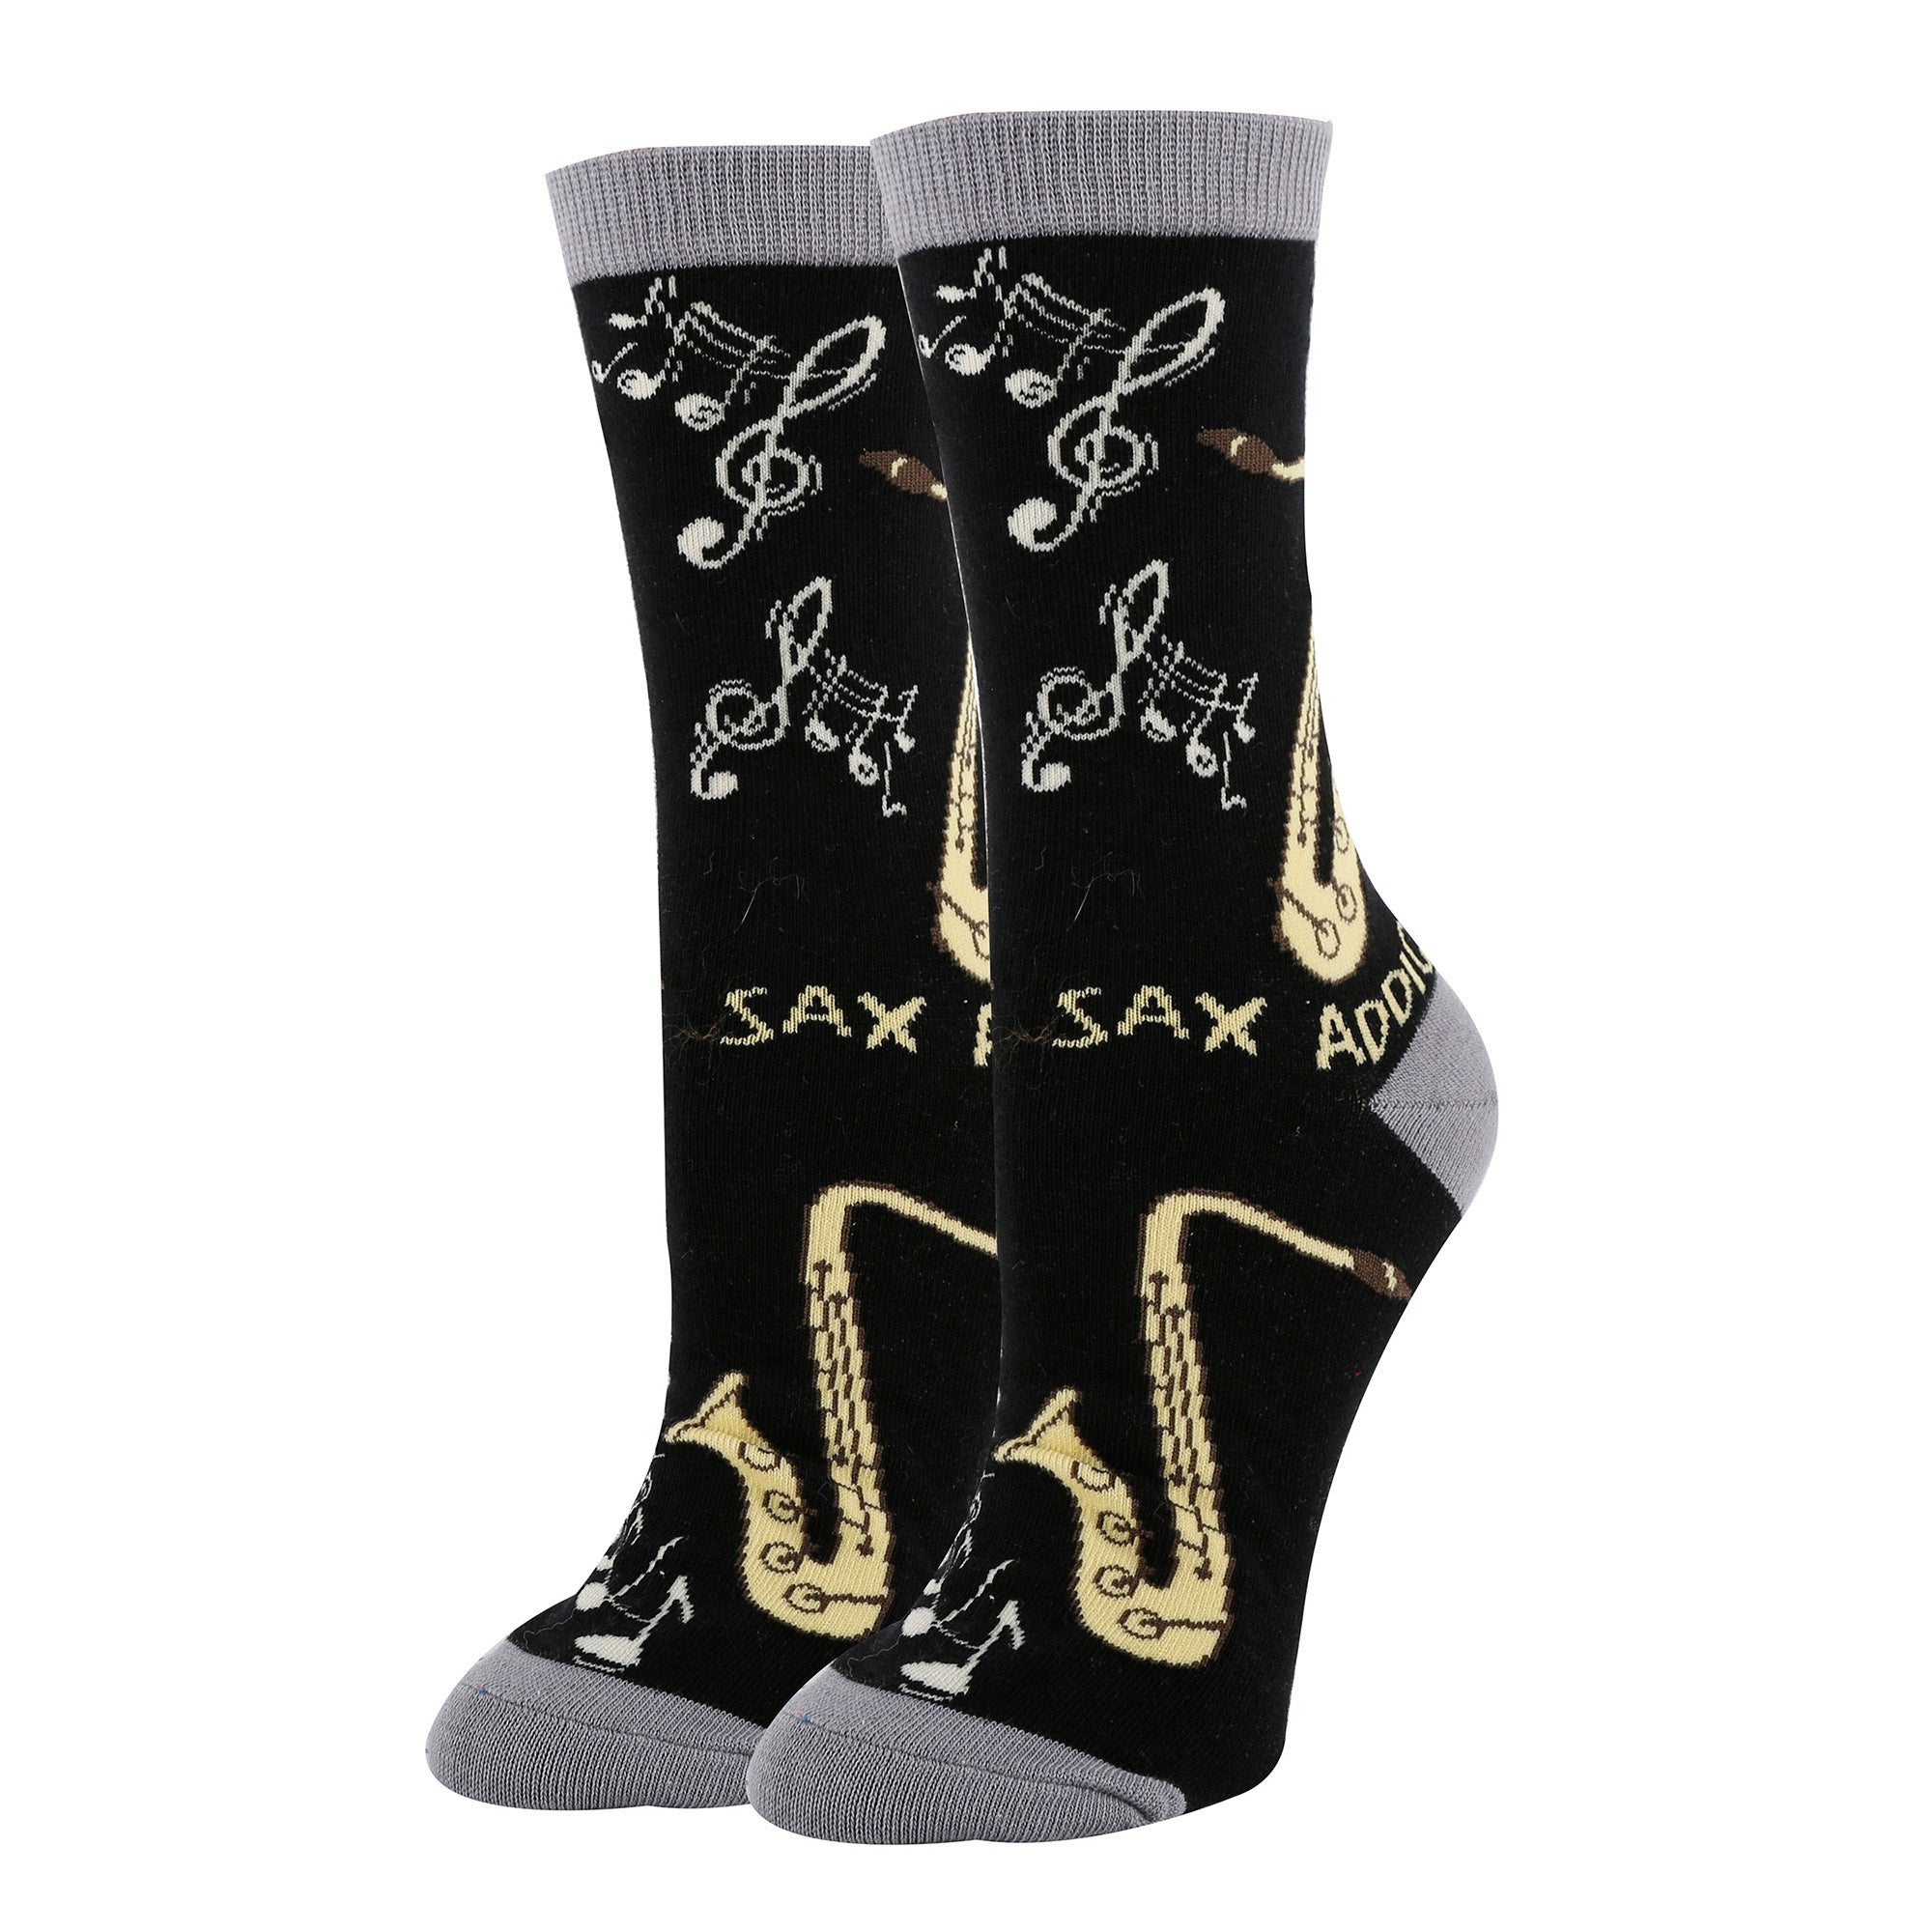 Sax Addict Socks | Novelty Crew Socks For Women